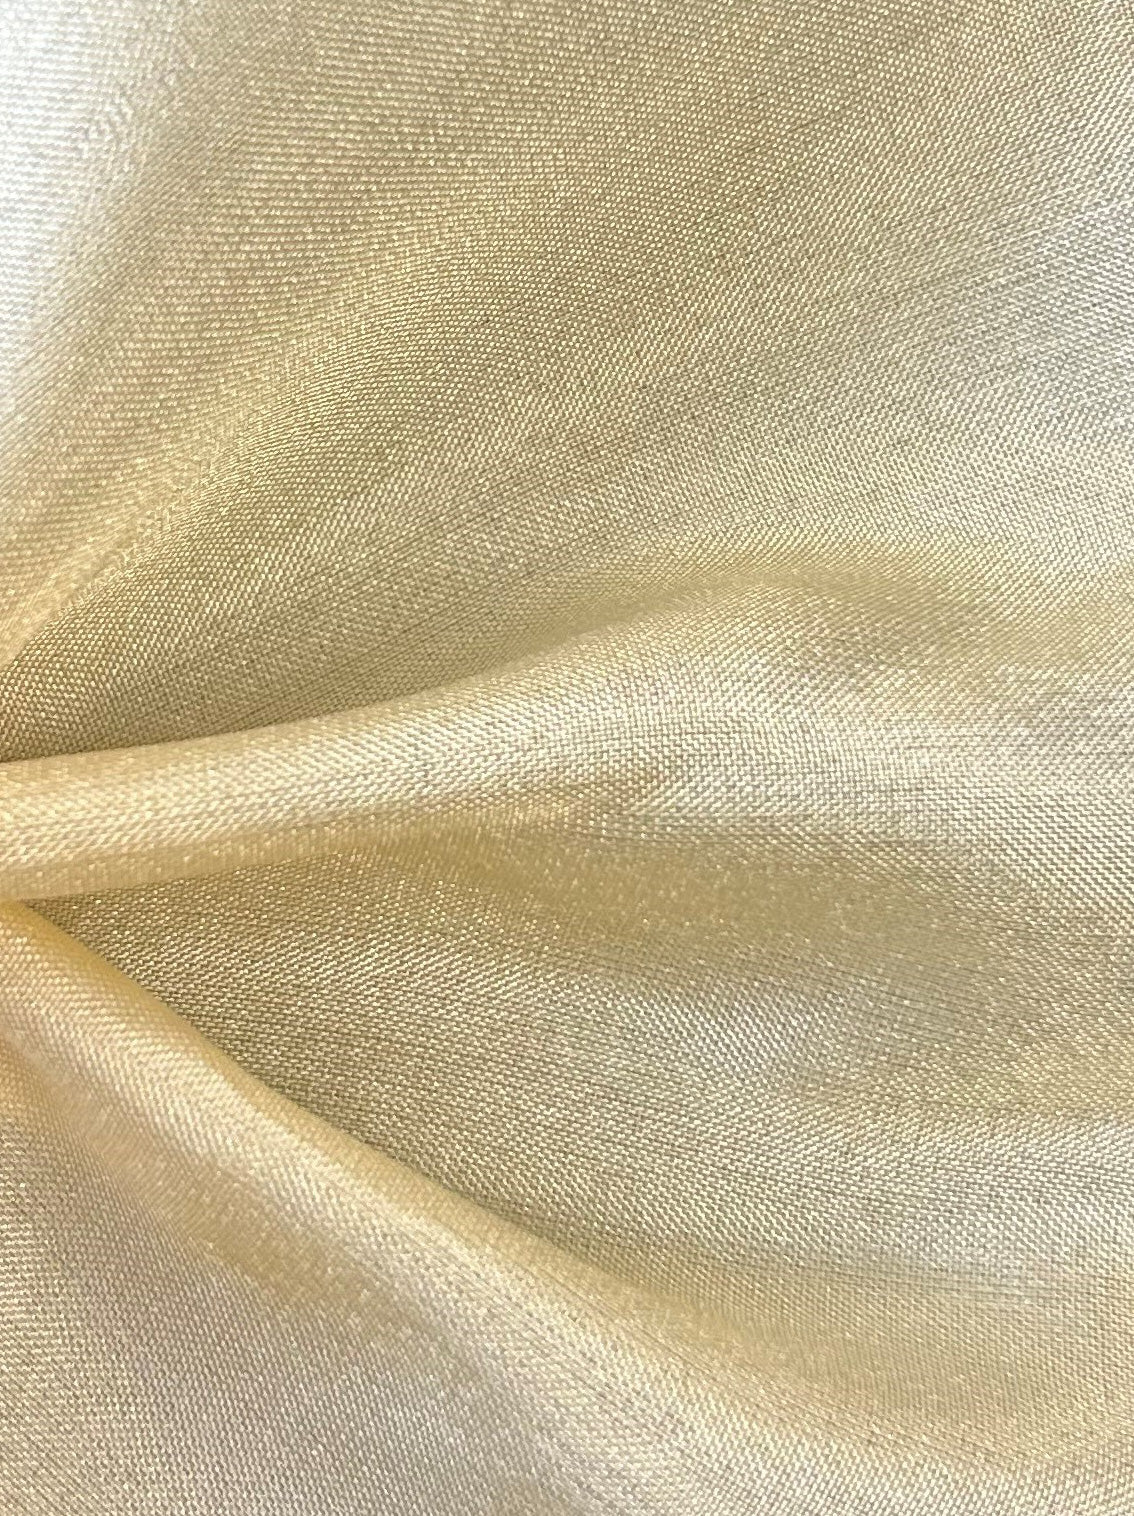 Habotai en soie or pâle - Mosaïque